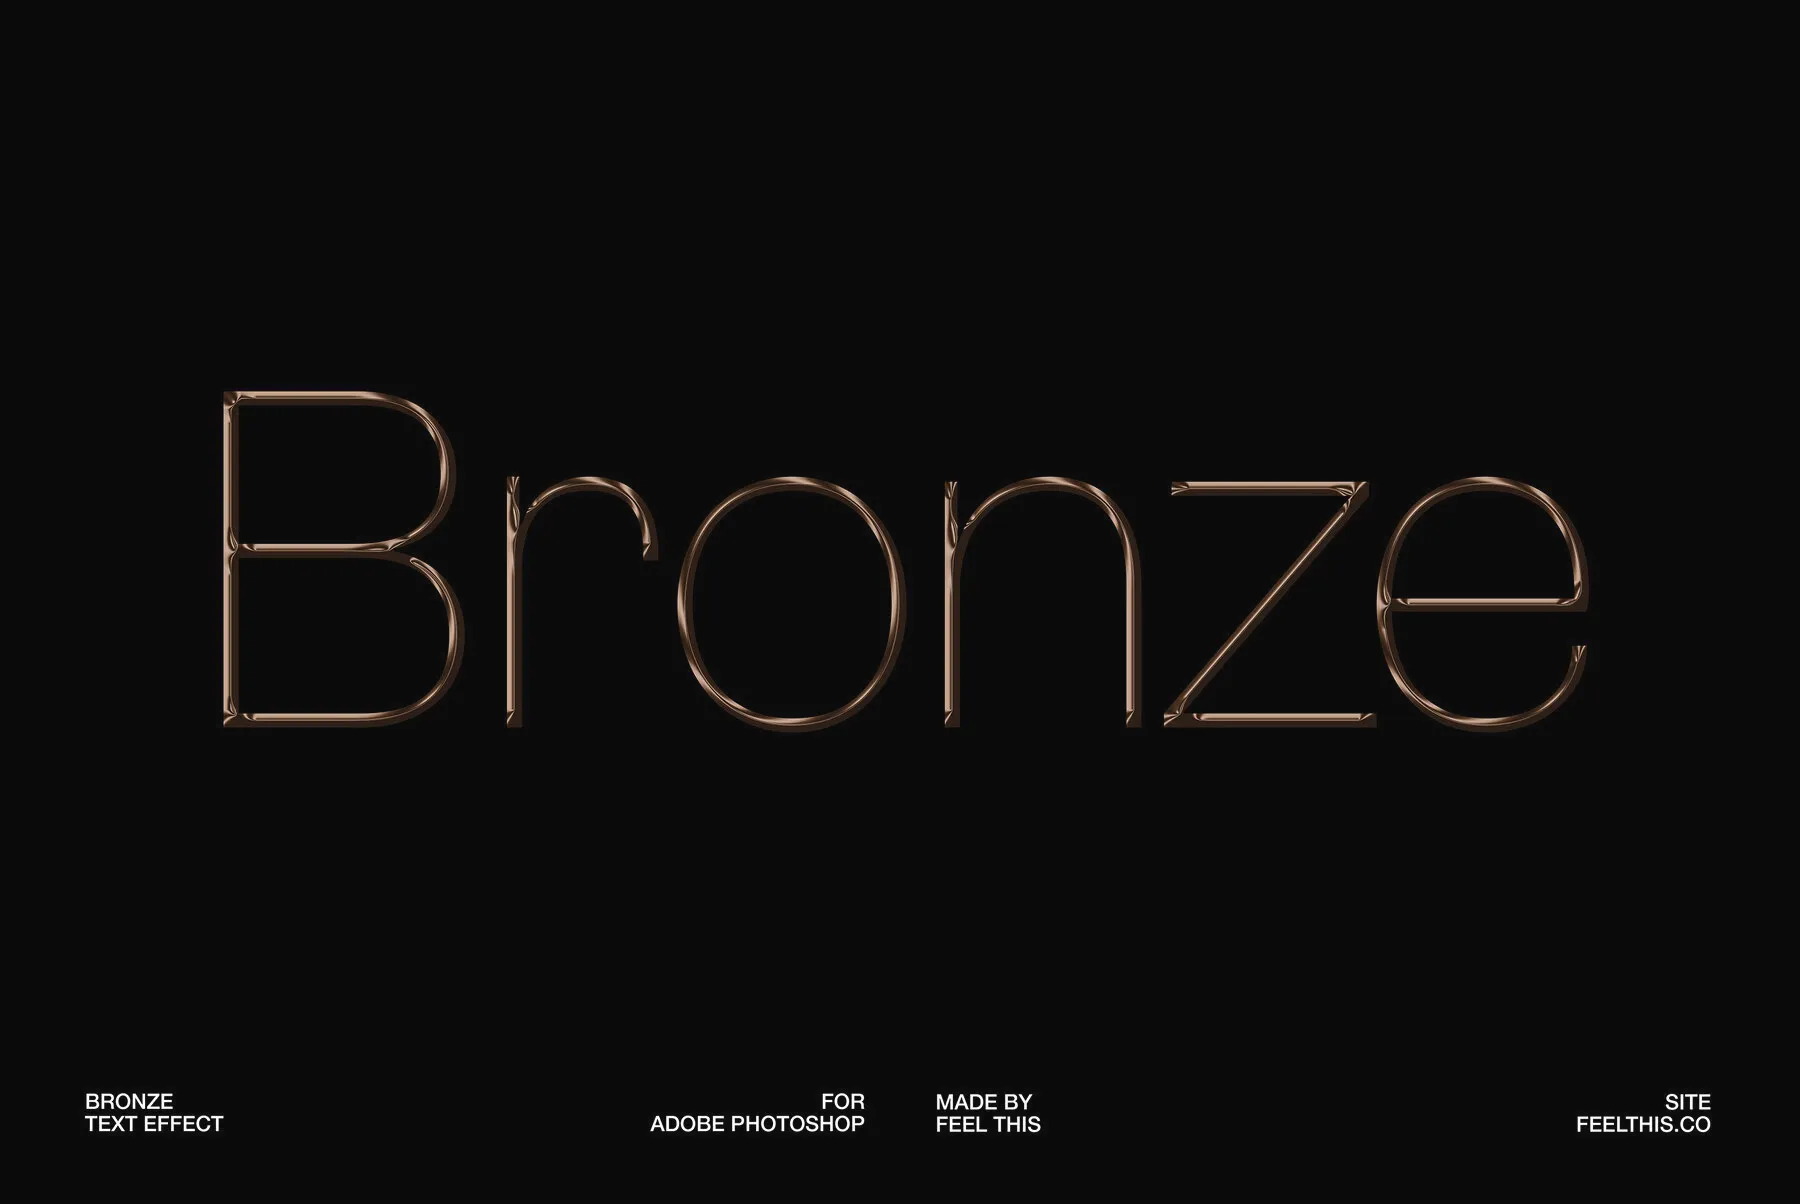 Bronze Text Effect